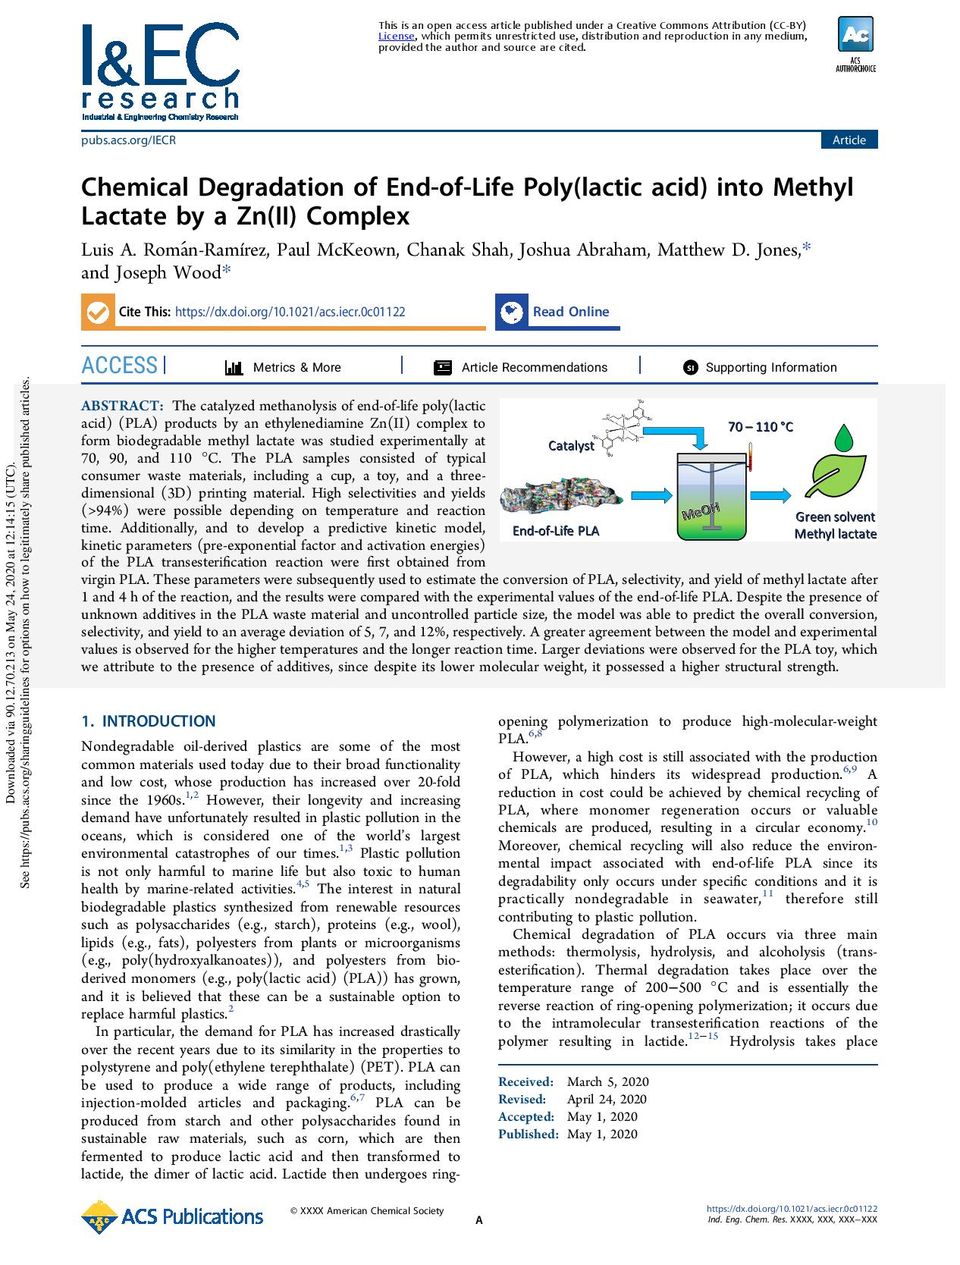 dégradation-chimique-du-l-acide-polylactique-en-fin-de-vie-en-lactate-de-méthyle-par-un-complexe-Zn-page-001